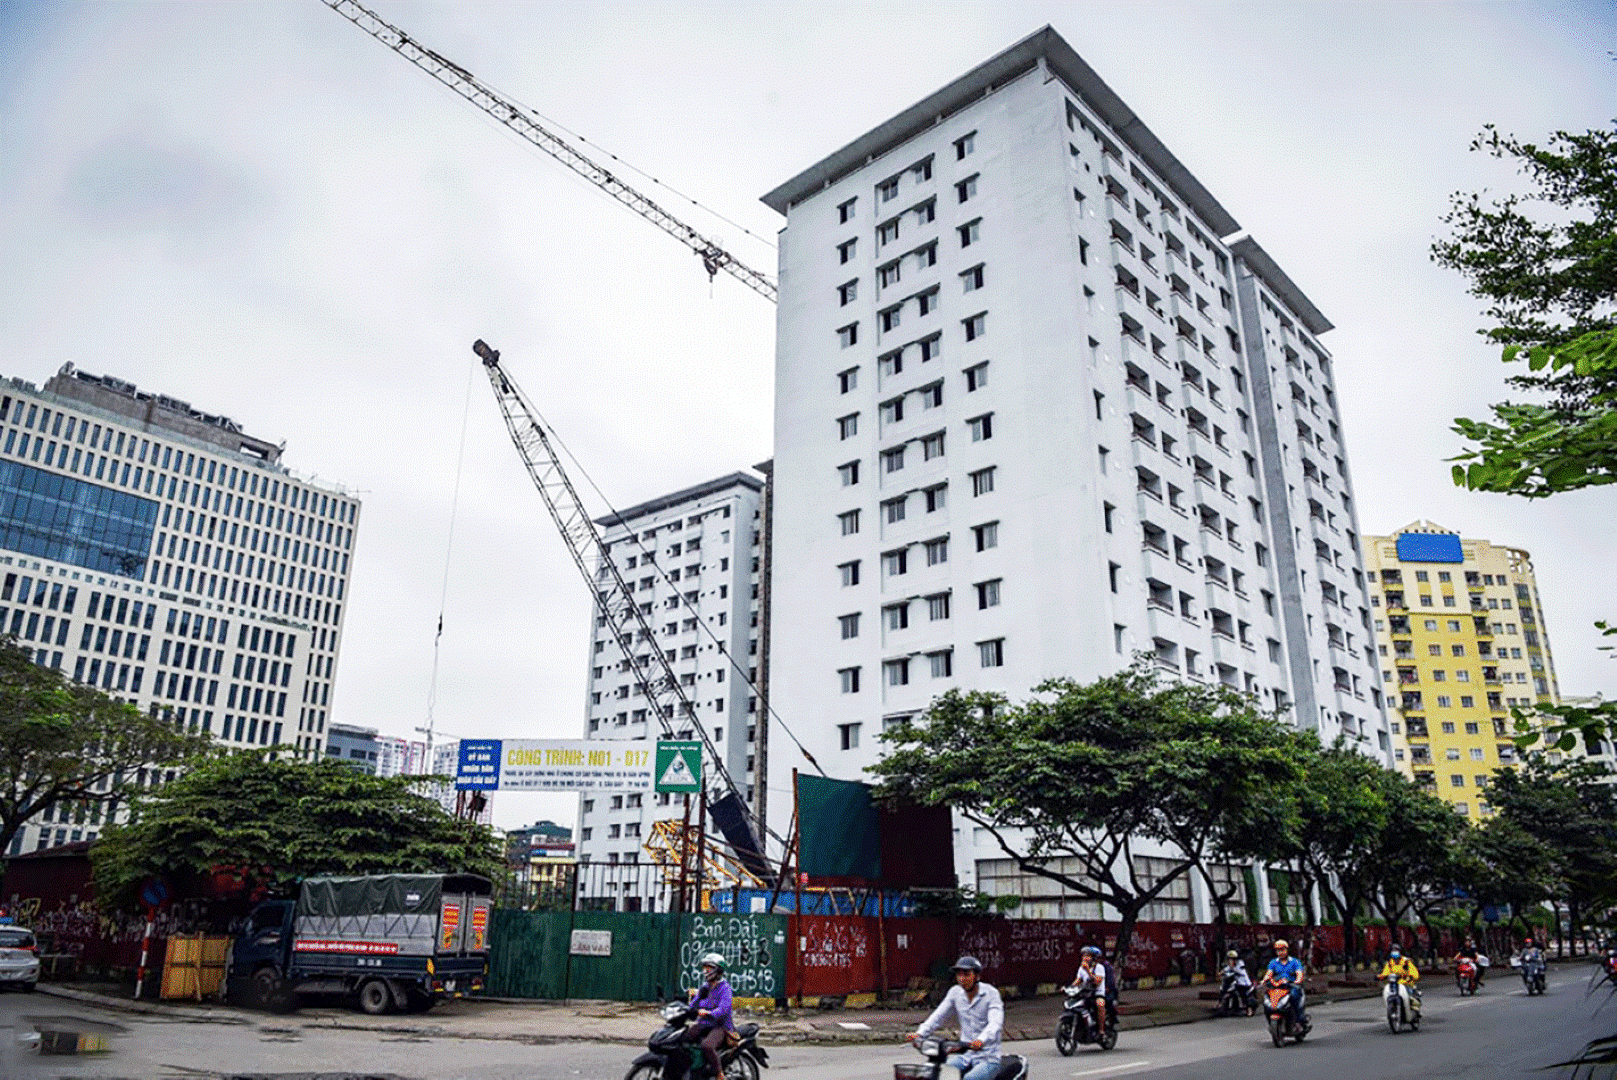 Dự án nhà tái định cư N01-D17 Duy Tân (phường Dịch Vọng Hậu, Cầu Giấy, Hà Nội).